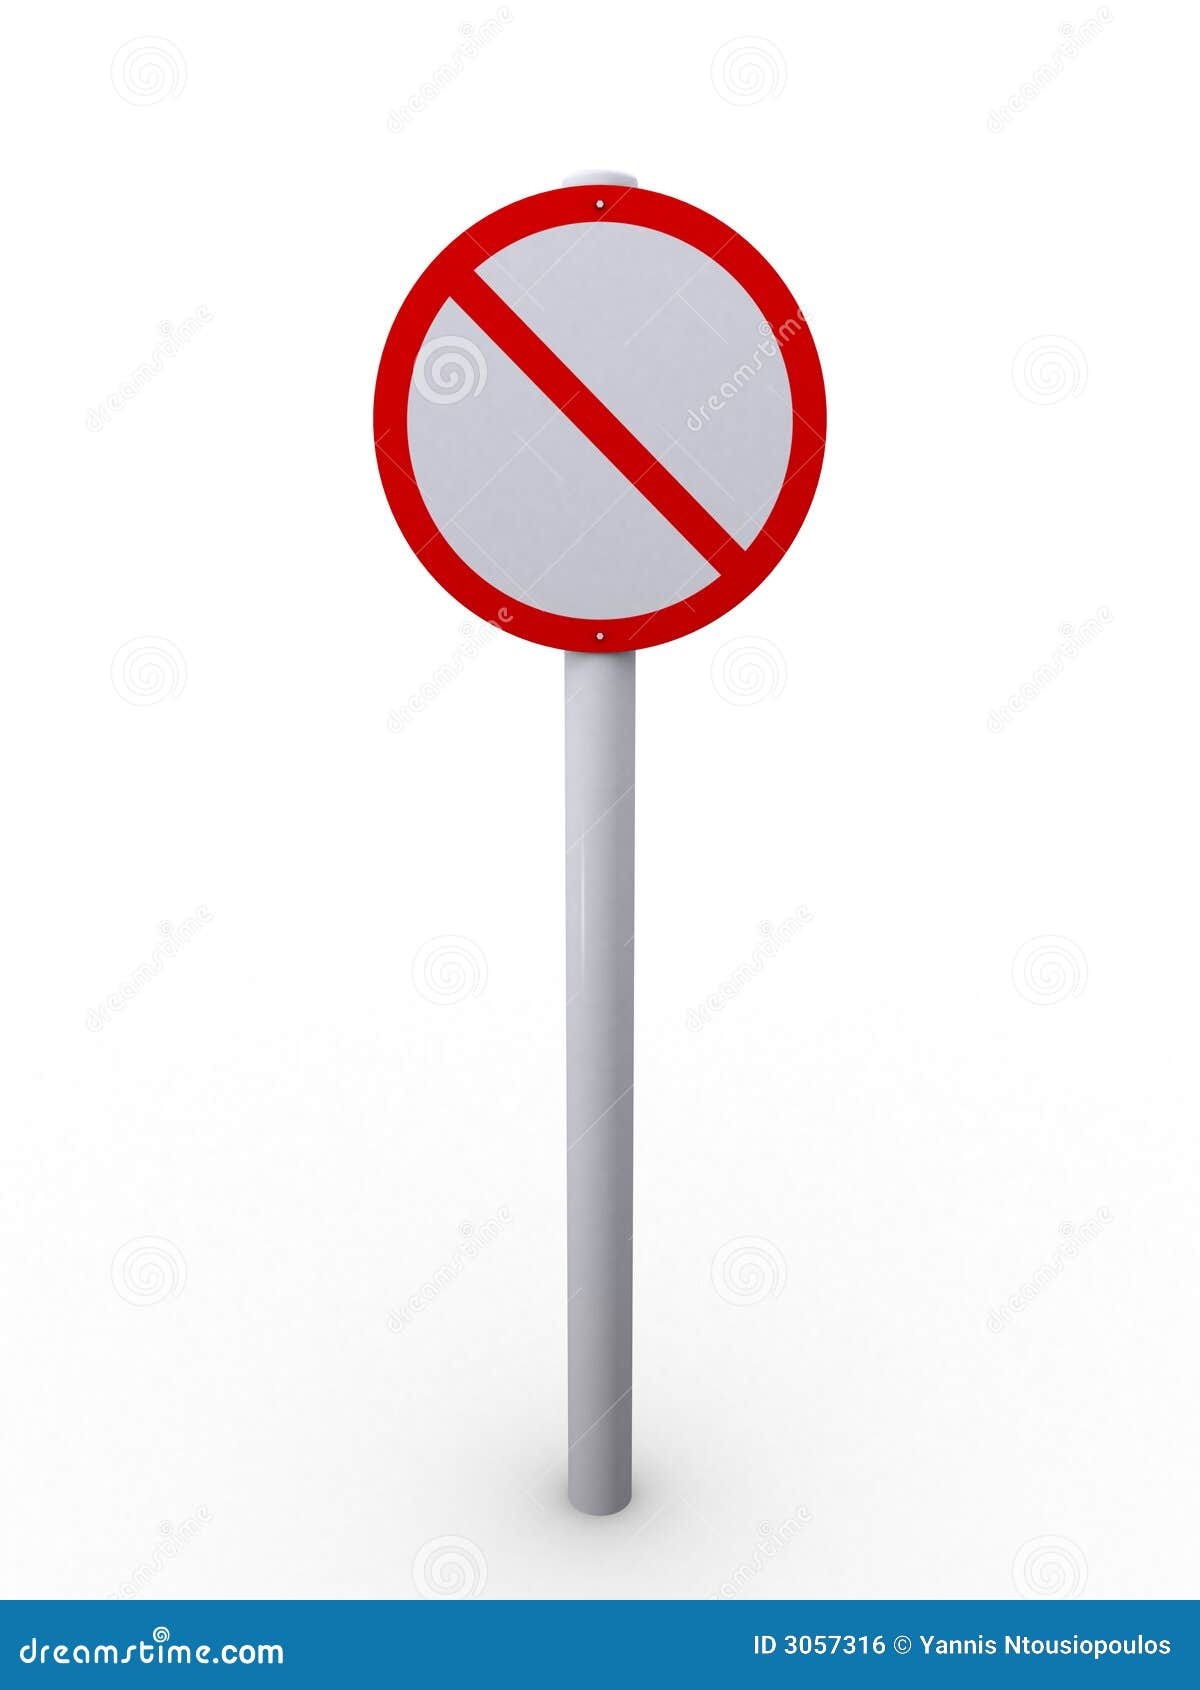 restrict sign